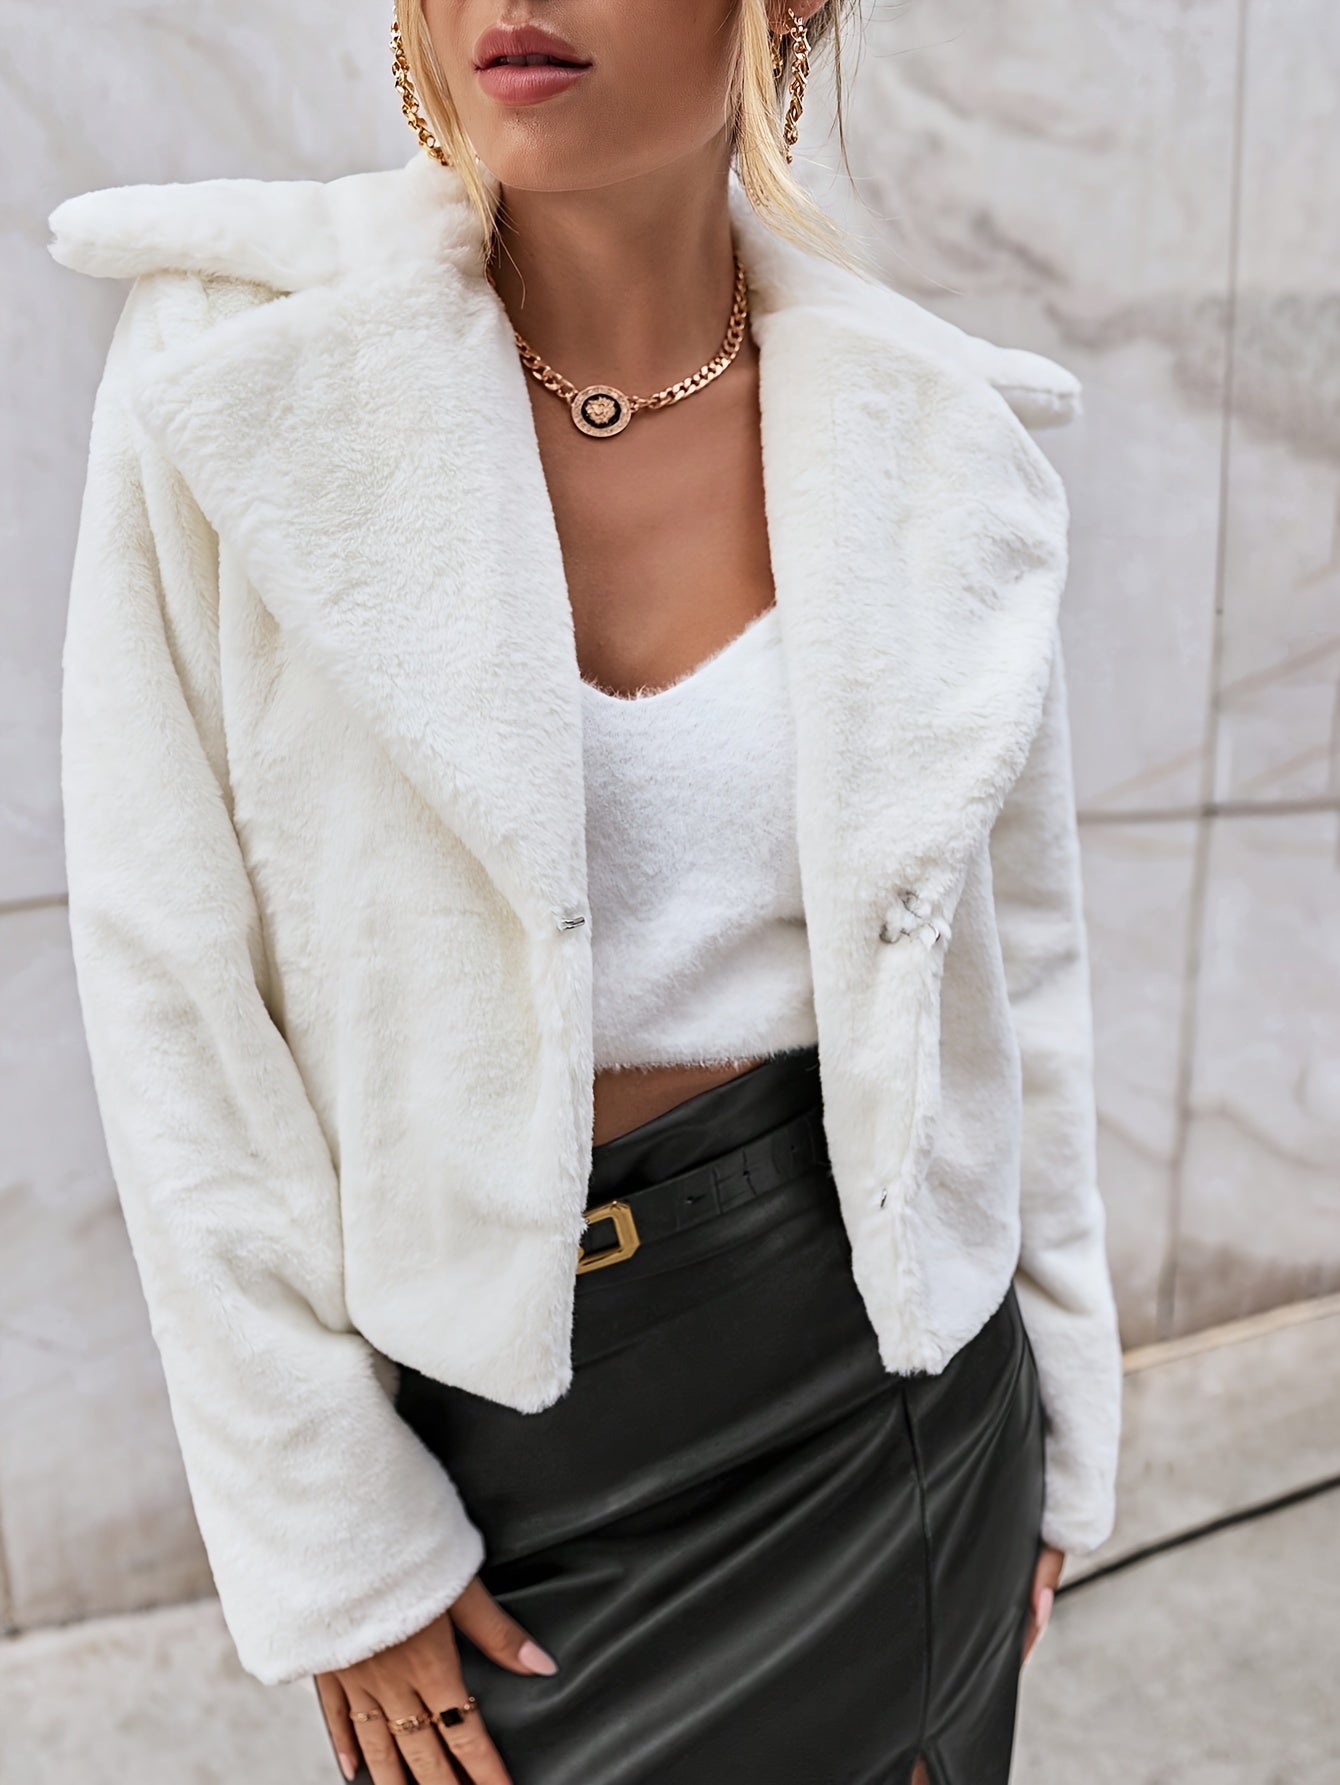 Vzyzv Solid Faux Fur Lapel Teddy Coat, Versatile Long Sleeve Thermal Winter Outwear, Women's Clothing